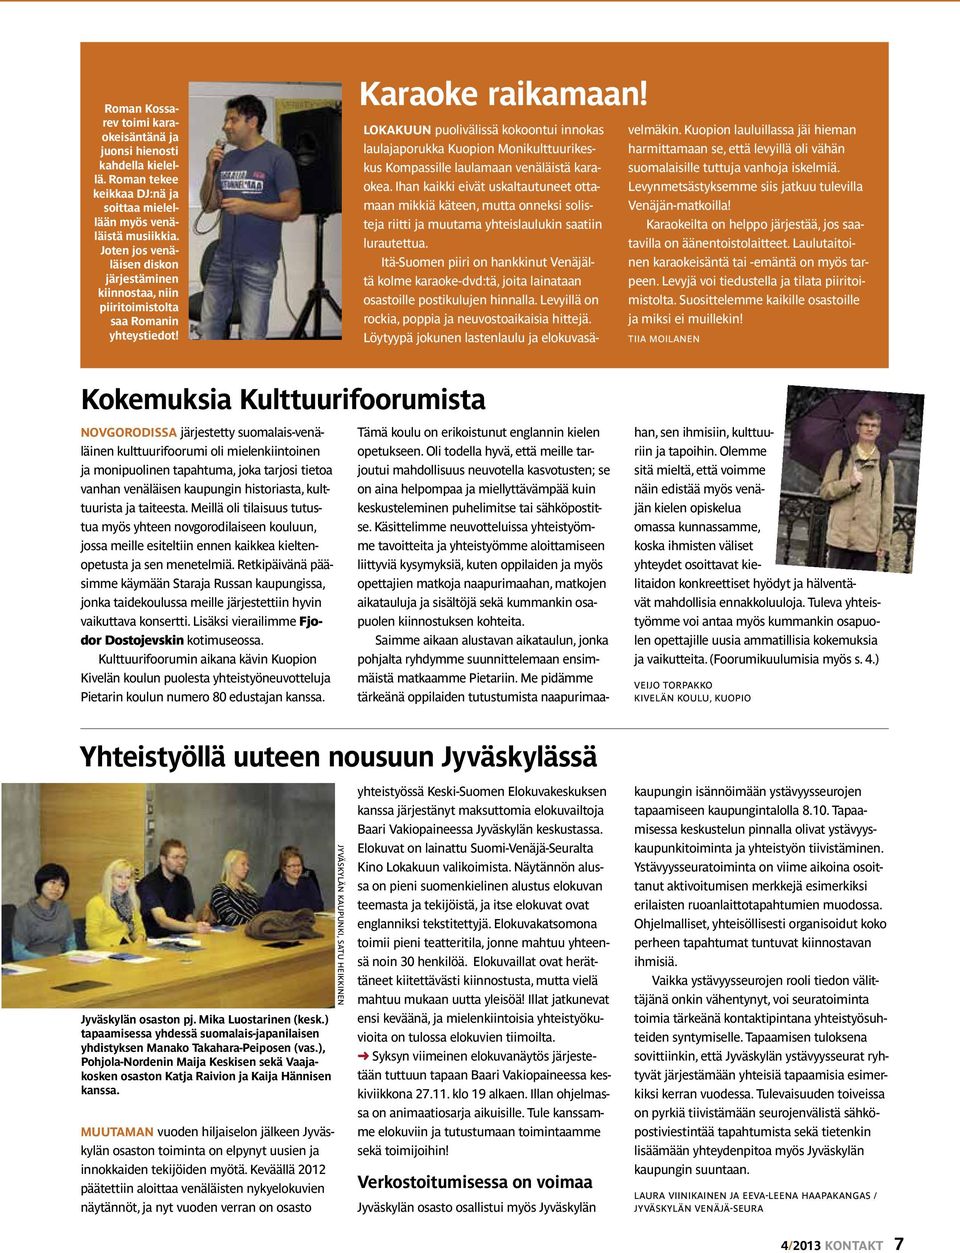 LOKAKUUN puolivälissä kokoontui innokas laulajaporukka Kuopion Monikulttuurikeskus Kompassille laulamaan venäläistä karaokea.